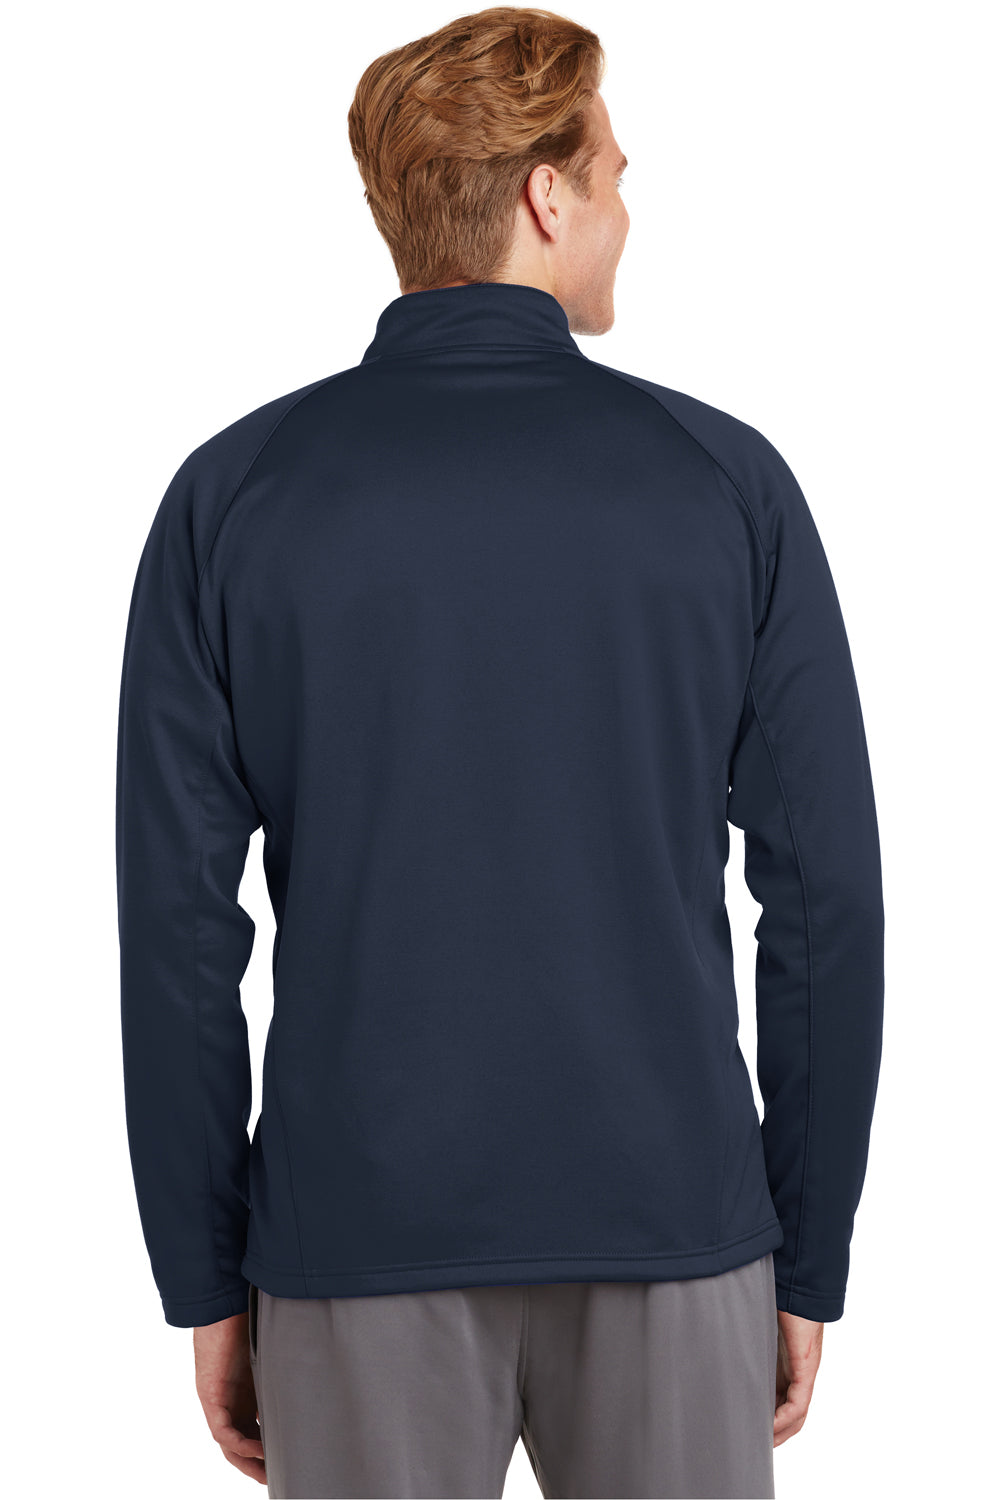 Sport-Tek F243 Mens Sport-Wick Moisture Wicking Fleece 1/4 Zip Sweatshirt Navy Blue Back